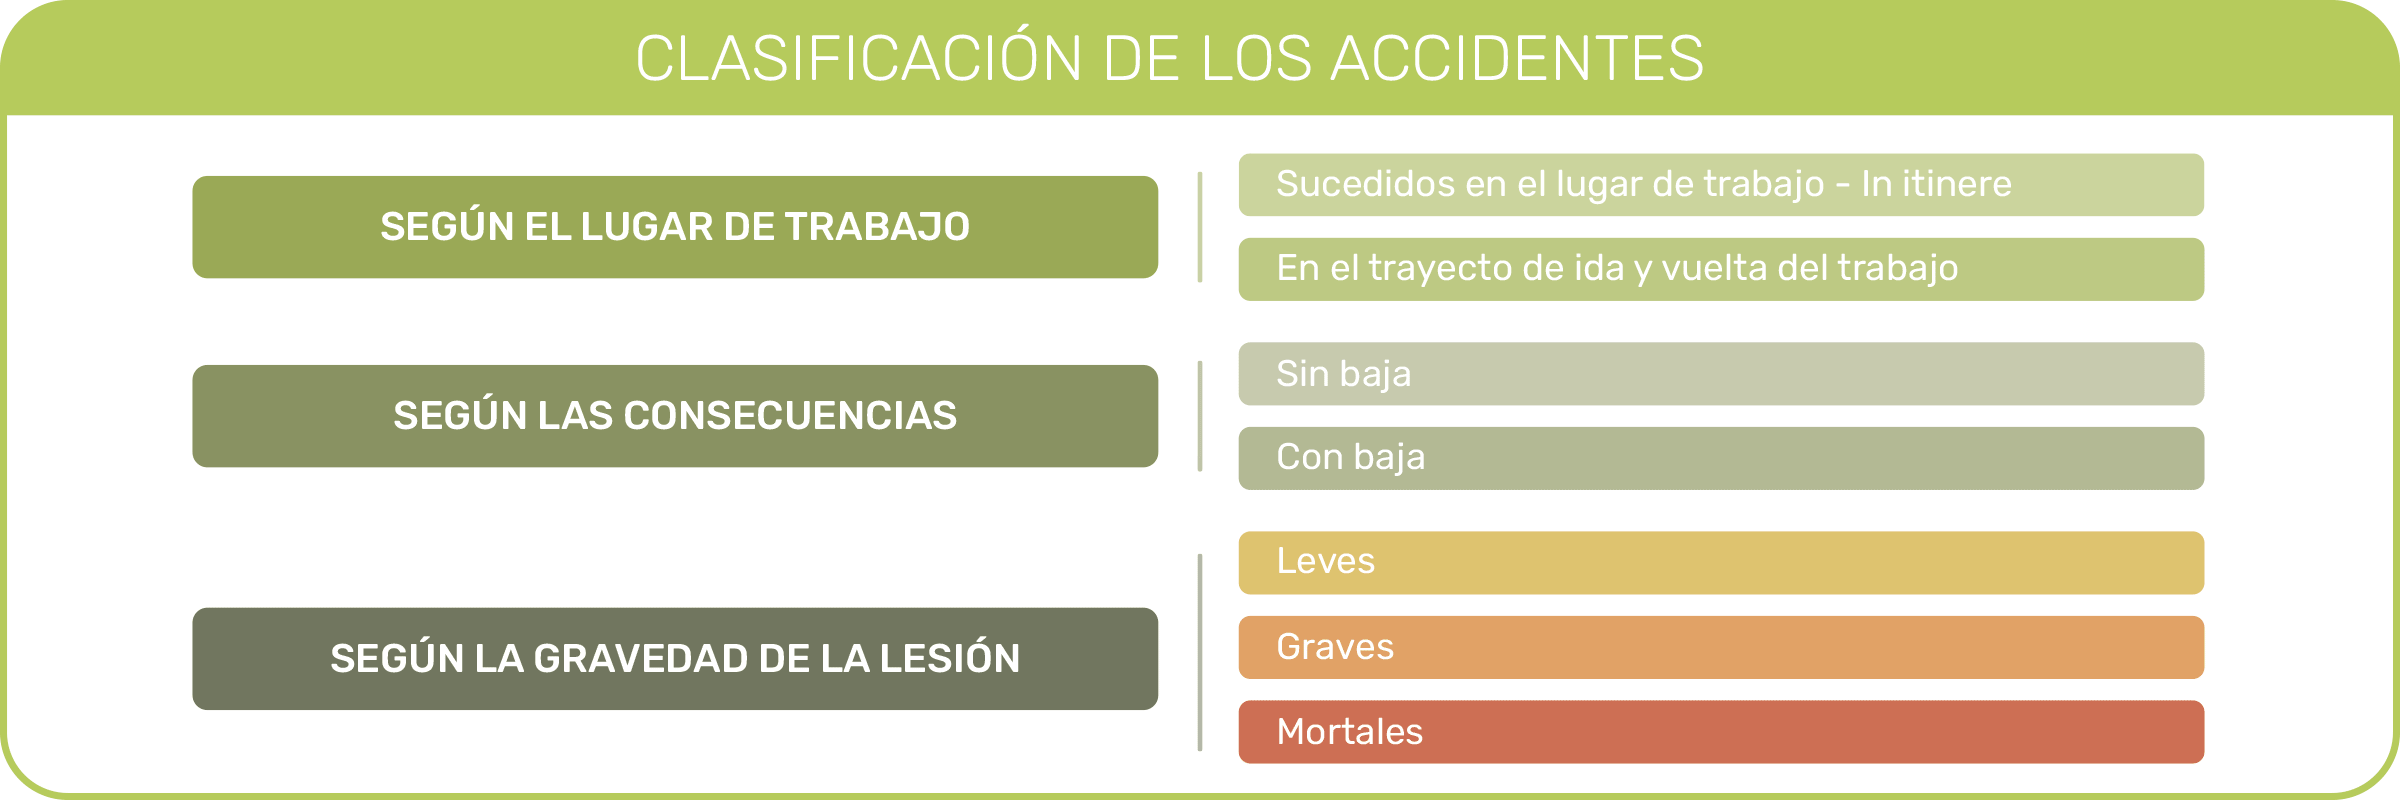 Clasificación de accidentes laborales